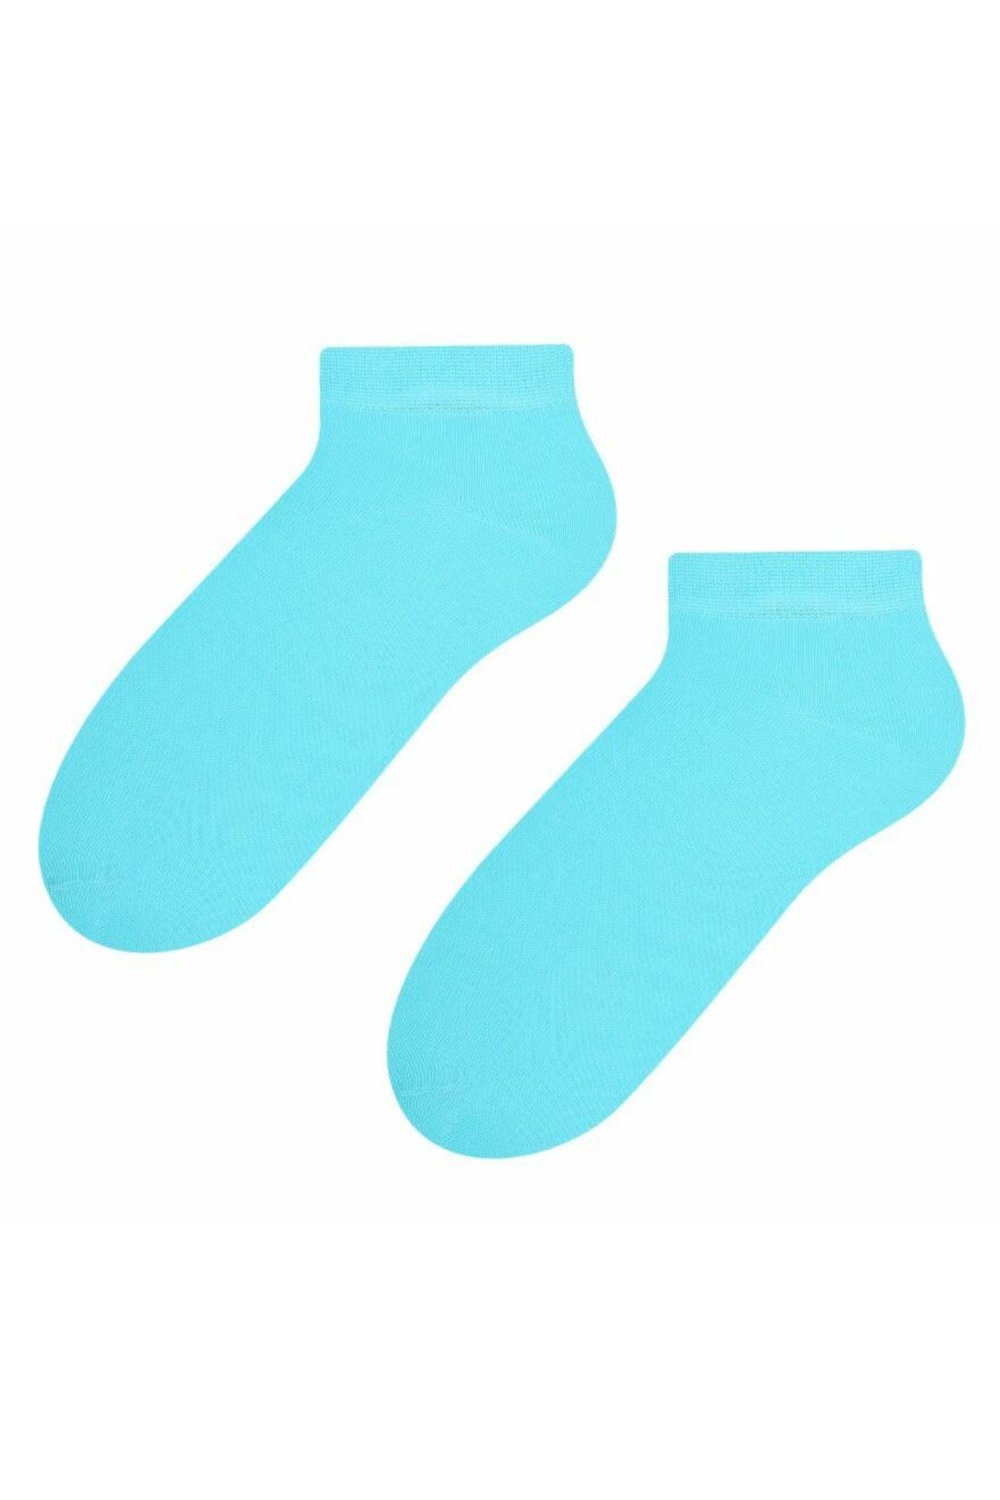 Női zokni 052 turquoise